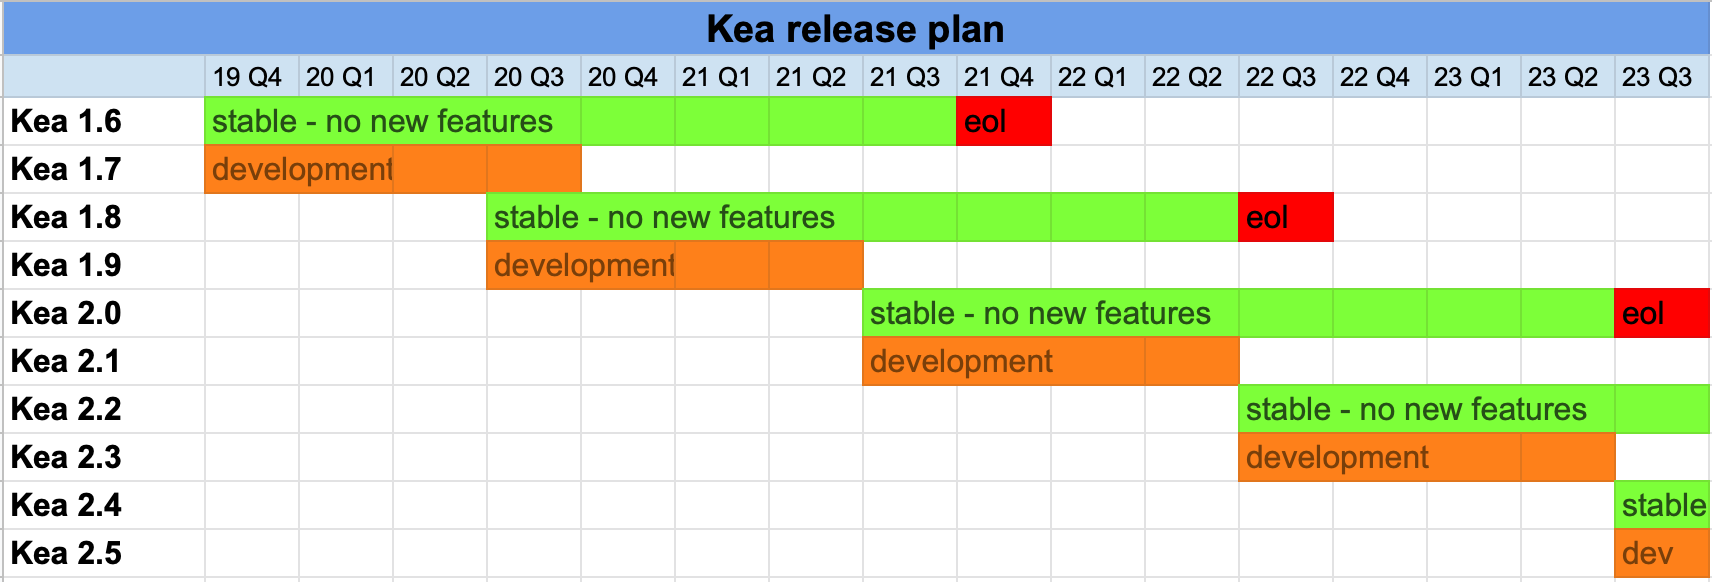 Kea release plan updated April 2021